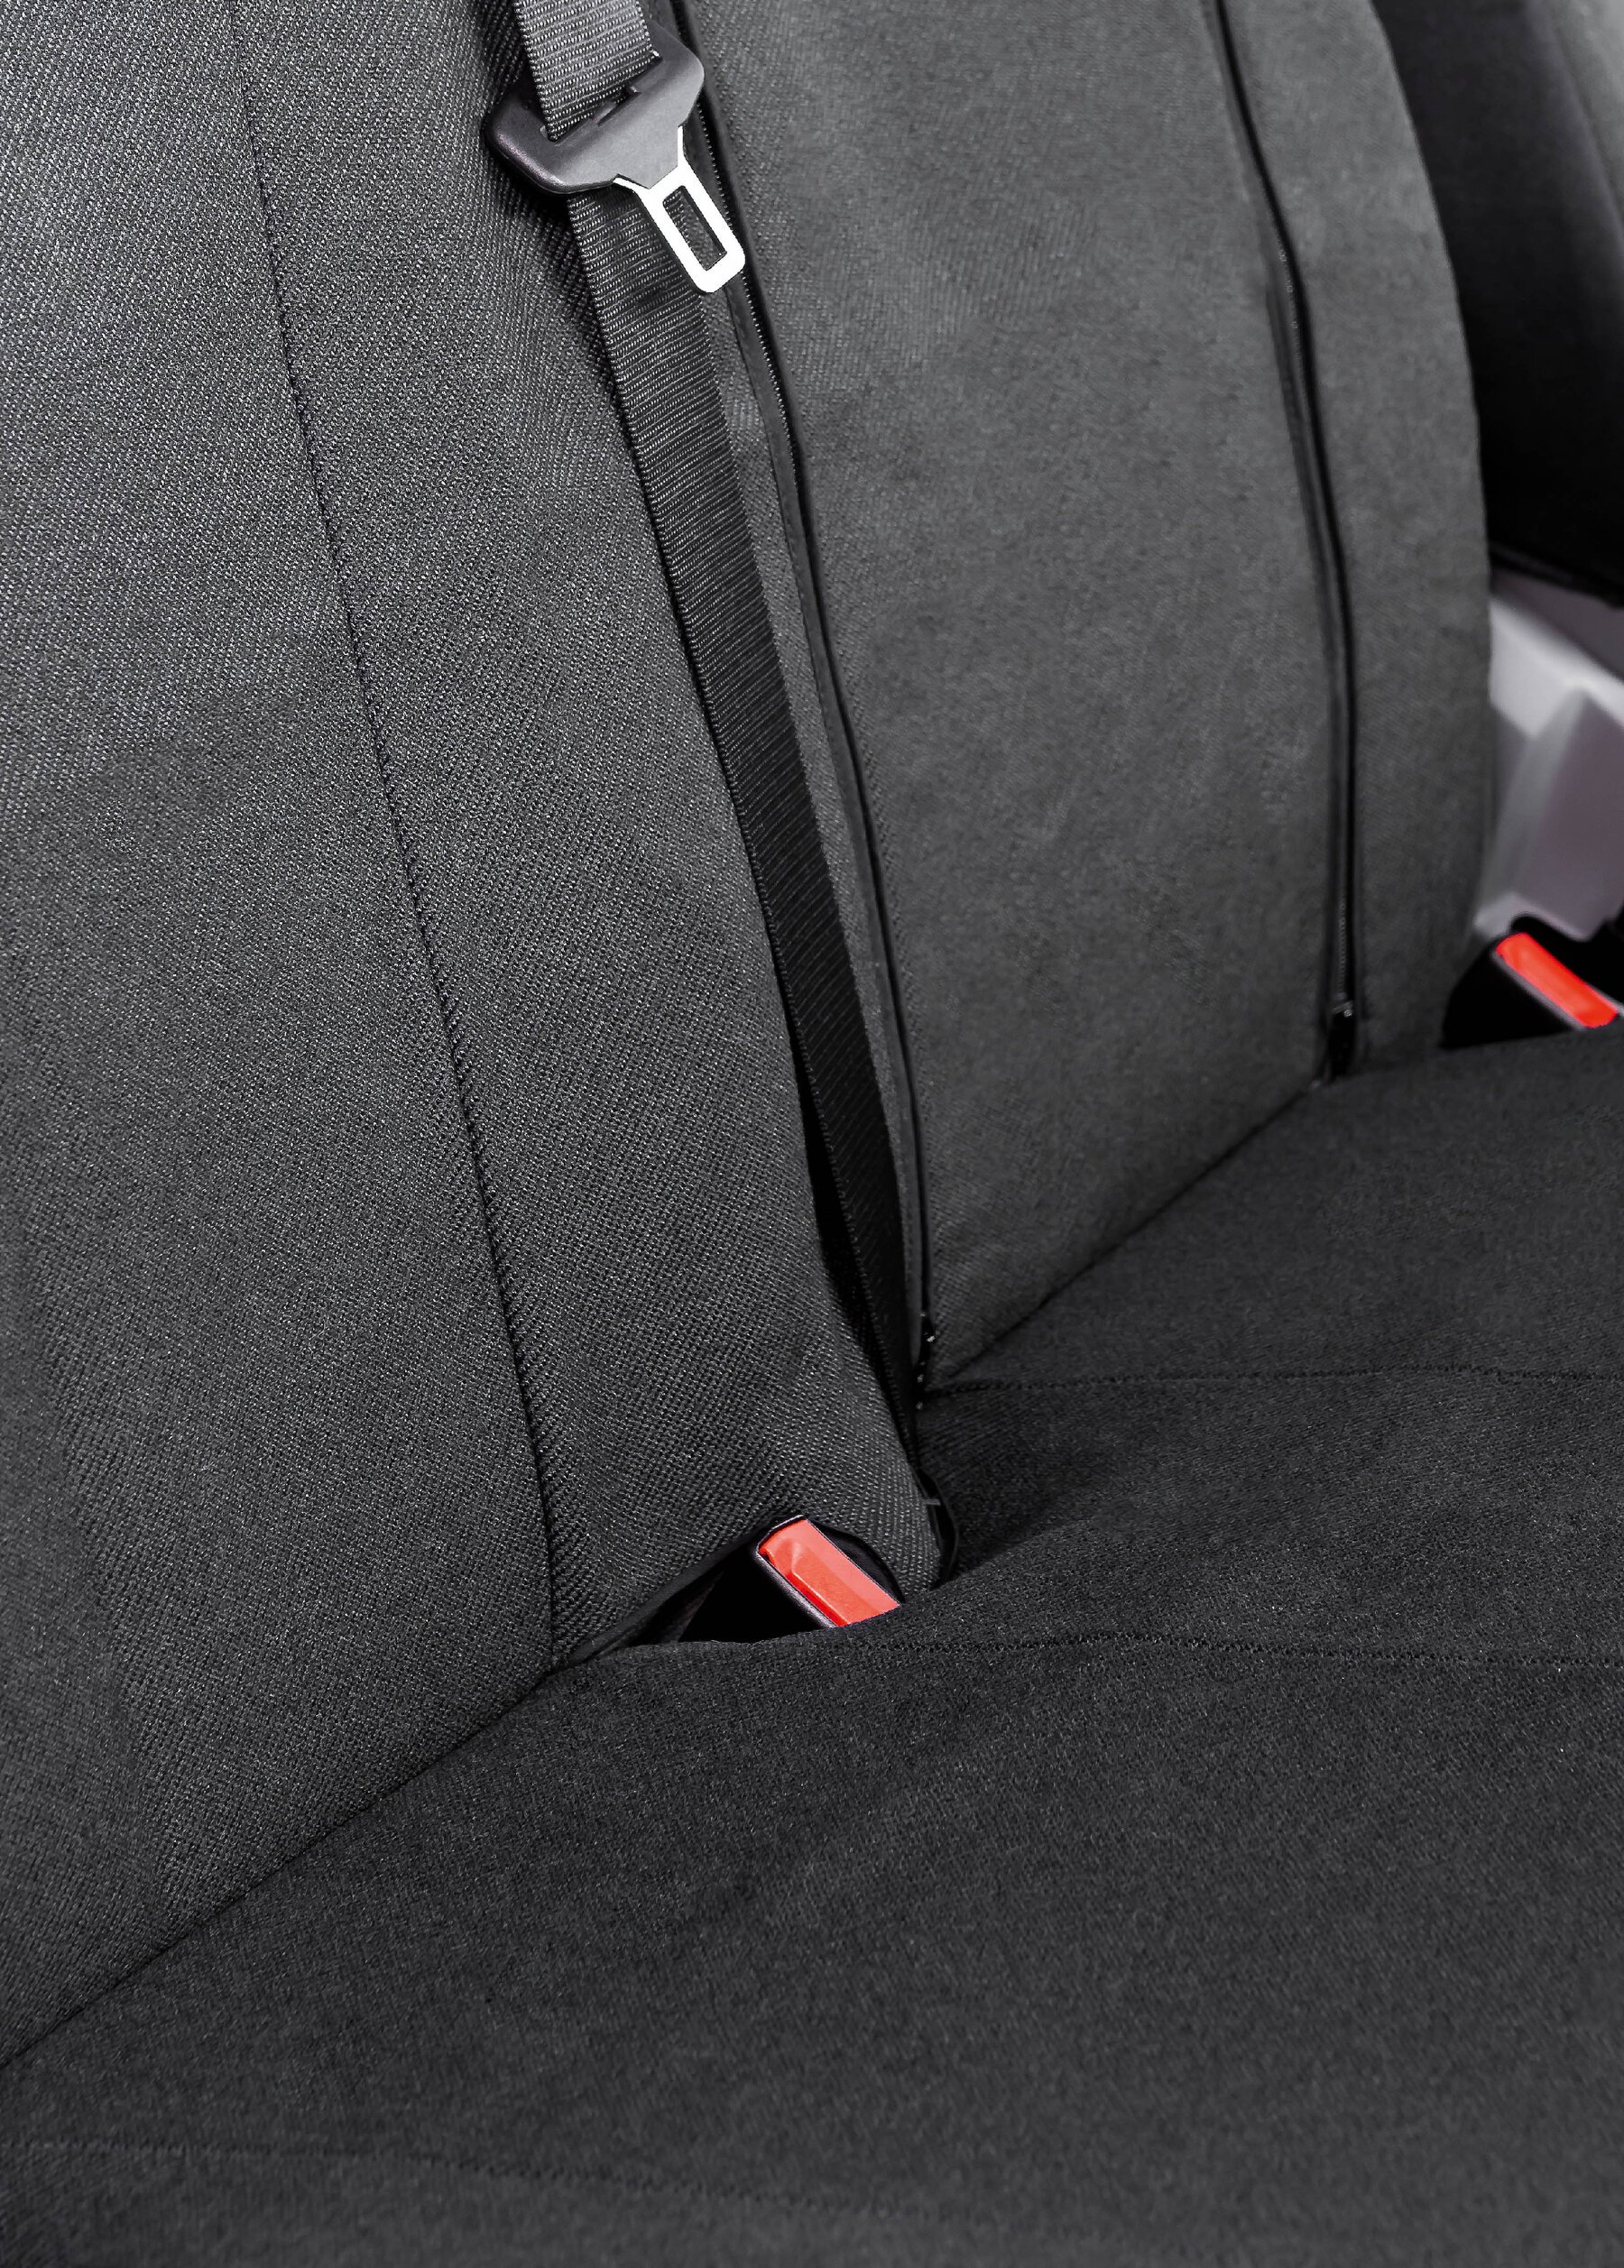 Housse de siège Transporter en tissu pour Ford Transit, siège simple et double